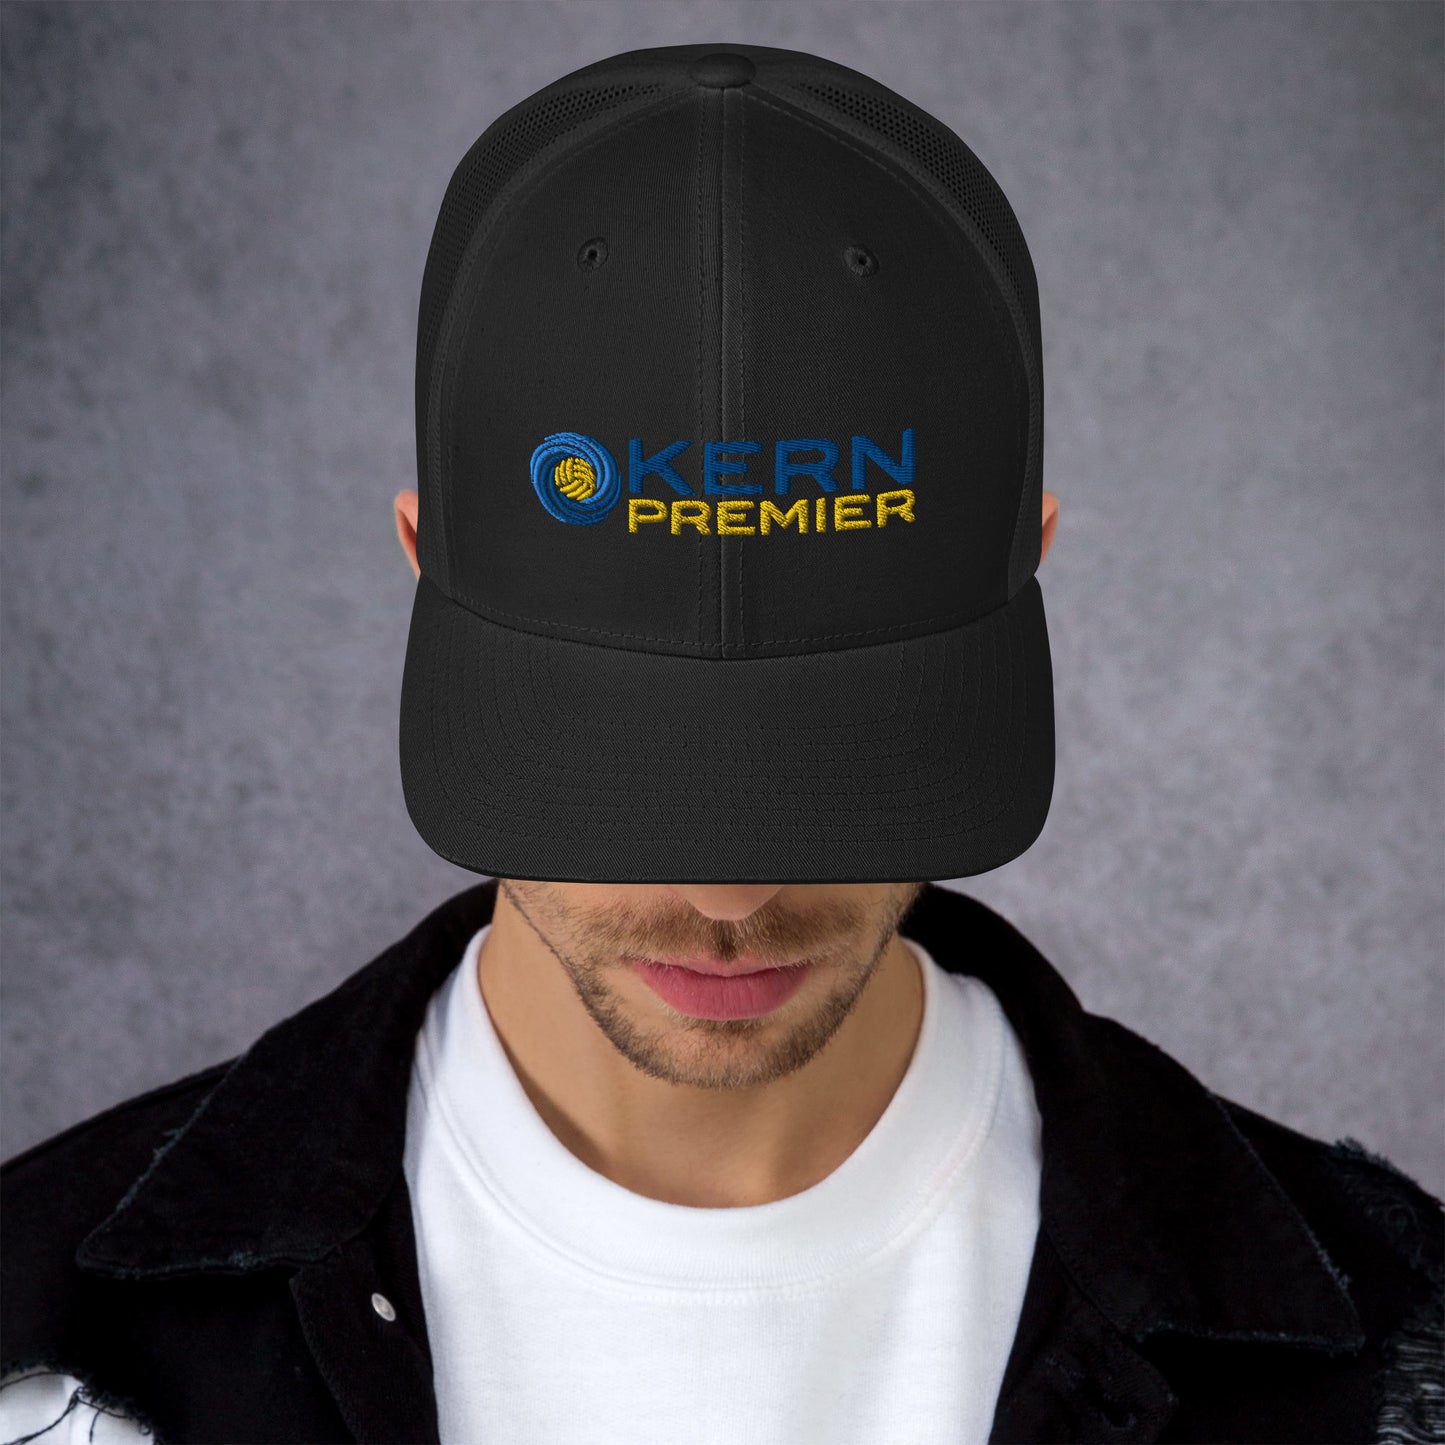 Kern Premier - Branded Retro Trucker Hat | Yupoong 6606